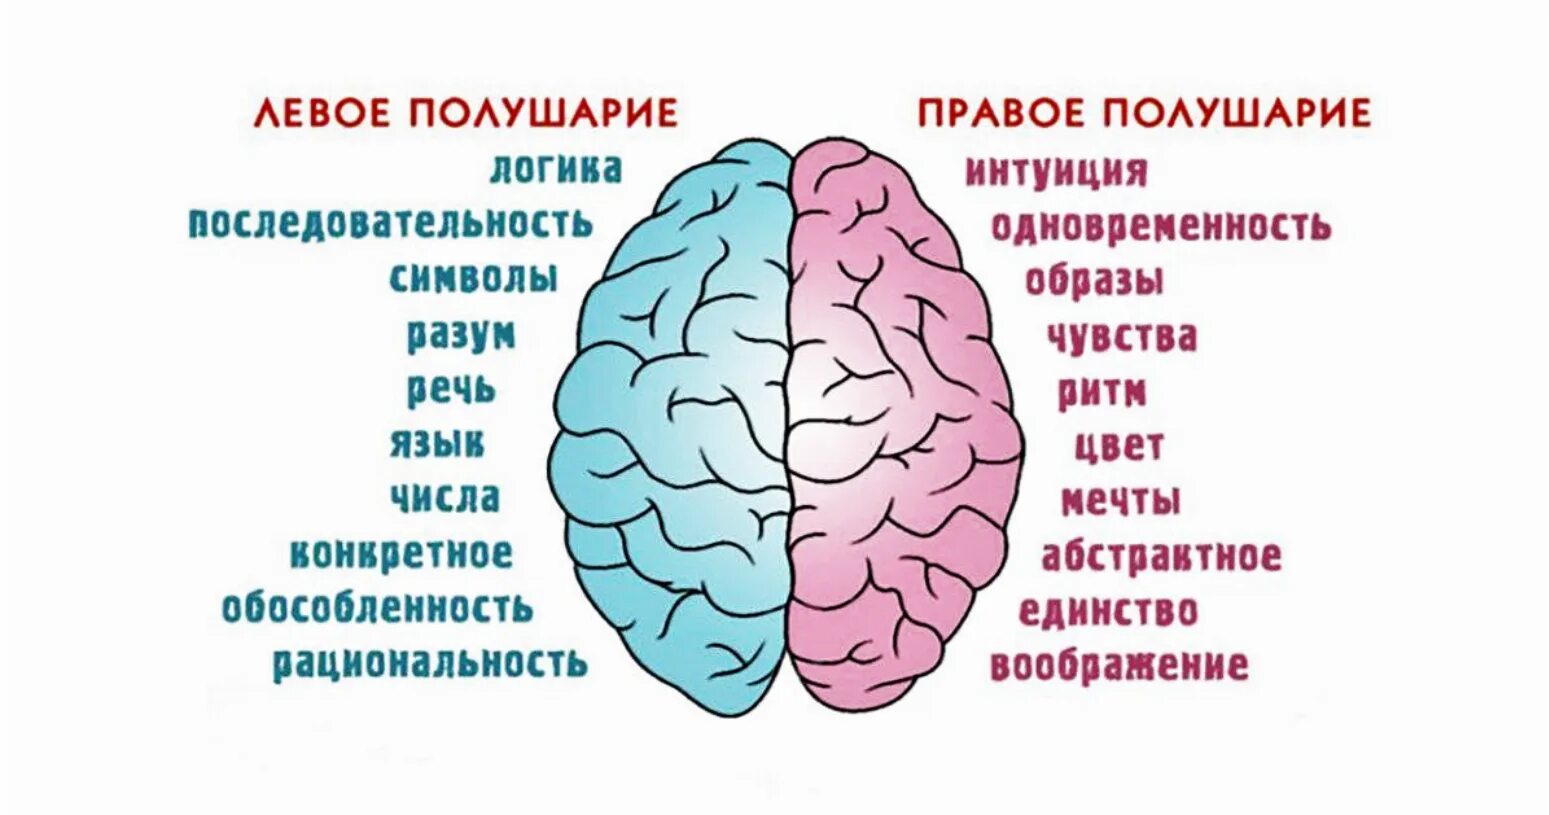 Изучают ли мозг. Полушария мозга девое т правое. За что отвечает правое полушарие. За что отвечают полушария головного мозга человека левое и правое. За какие процессы головного мозга отвечает правое полушарие.